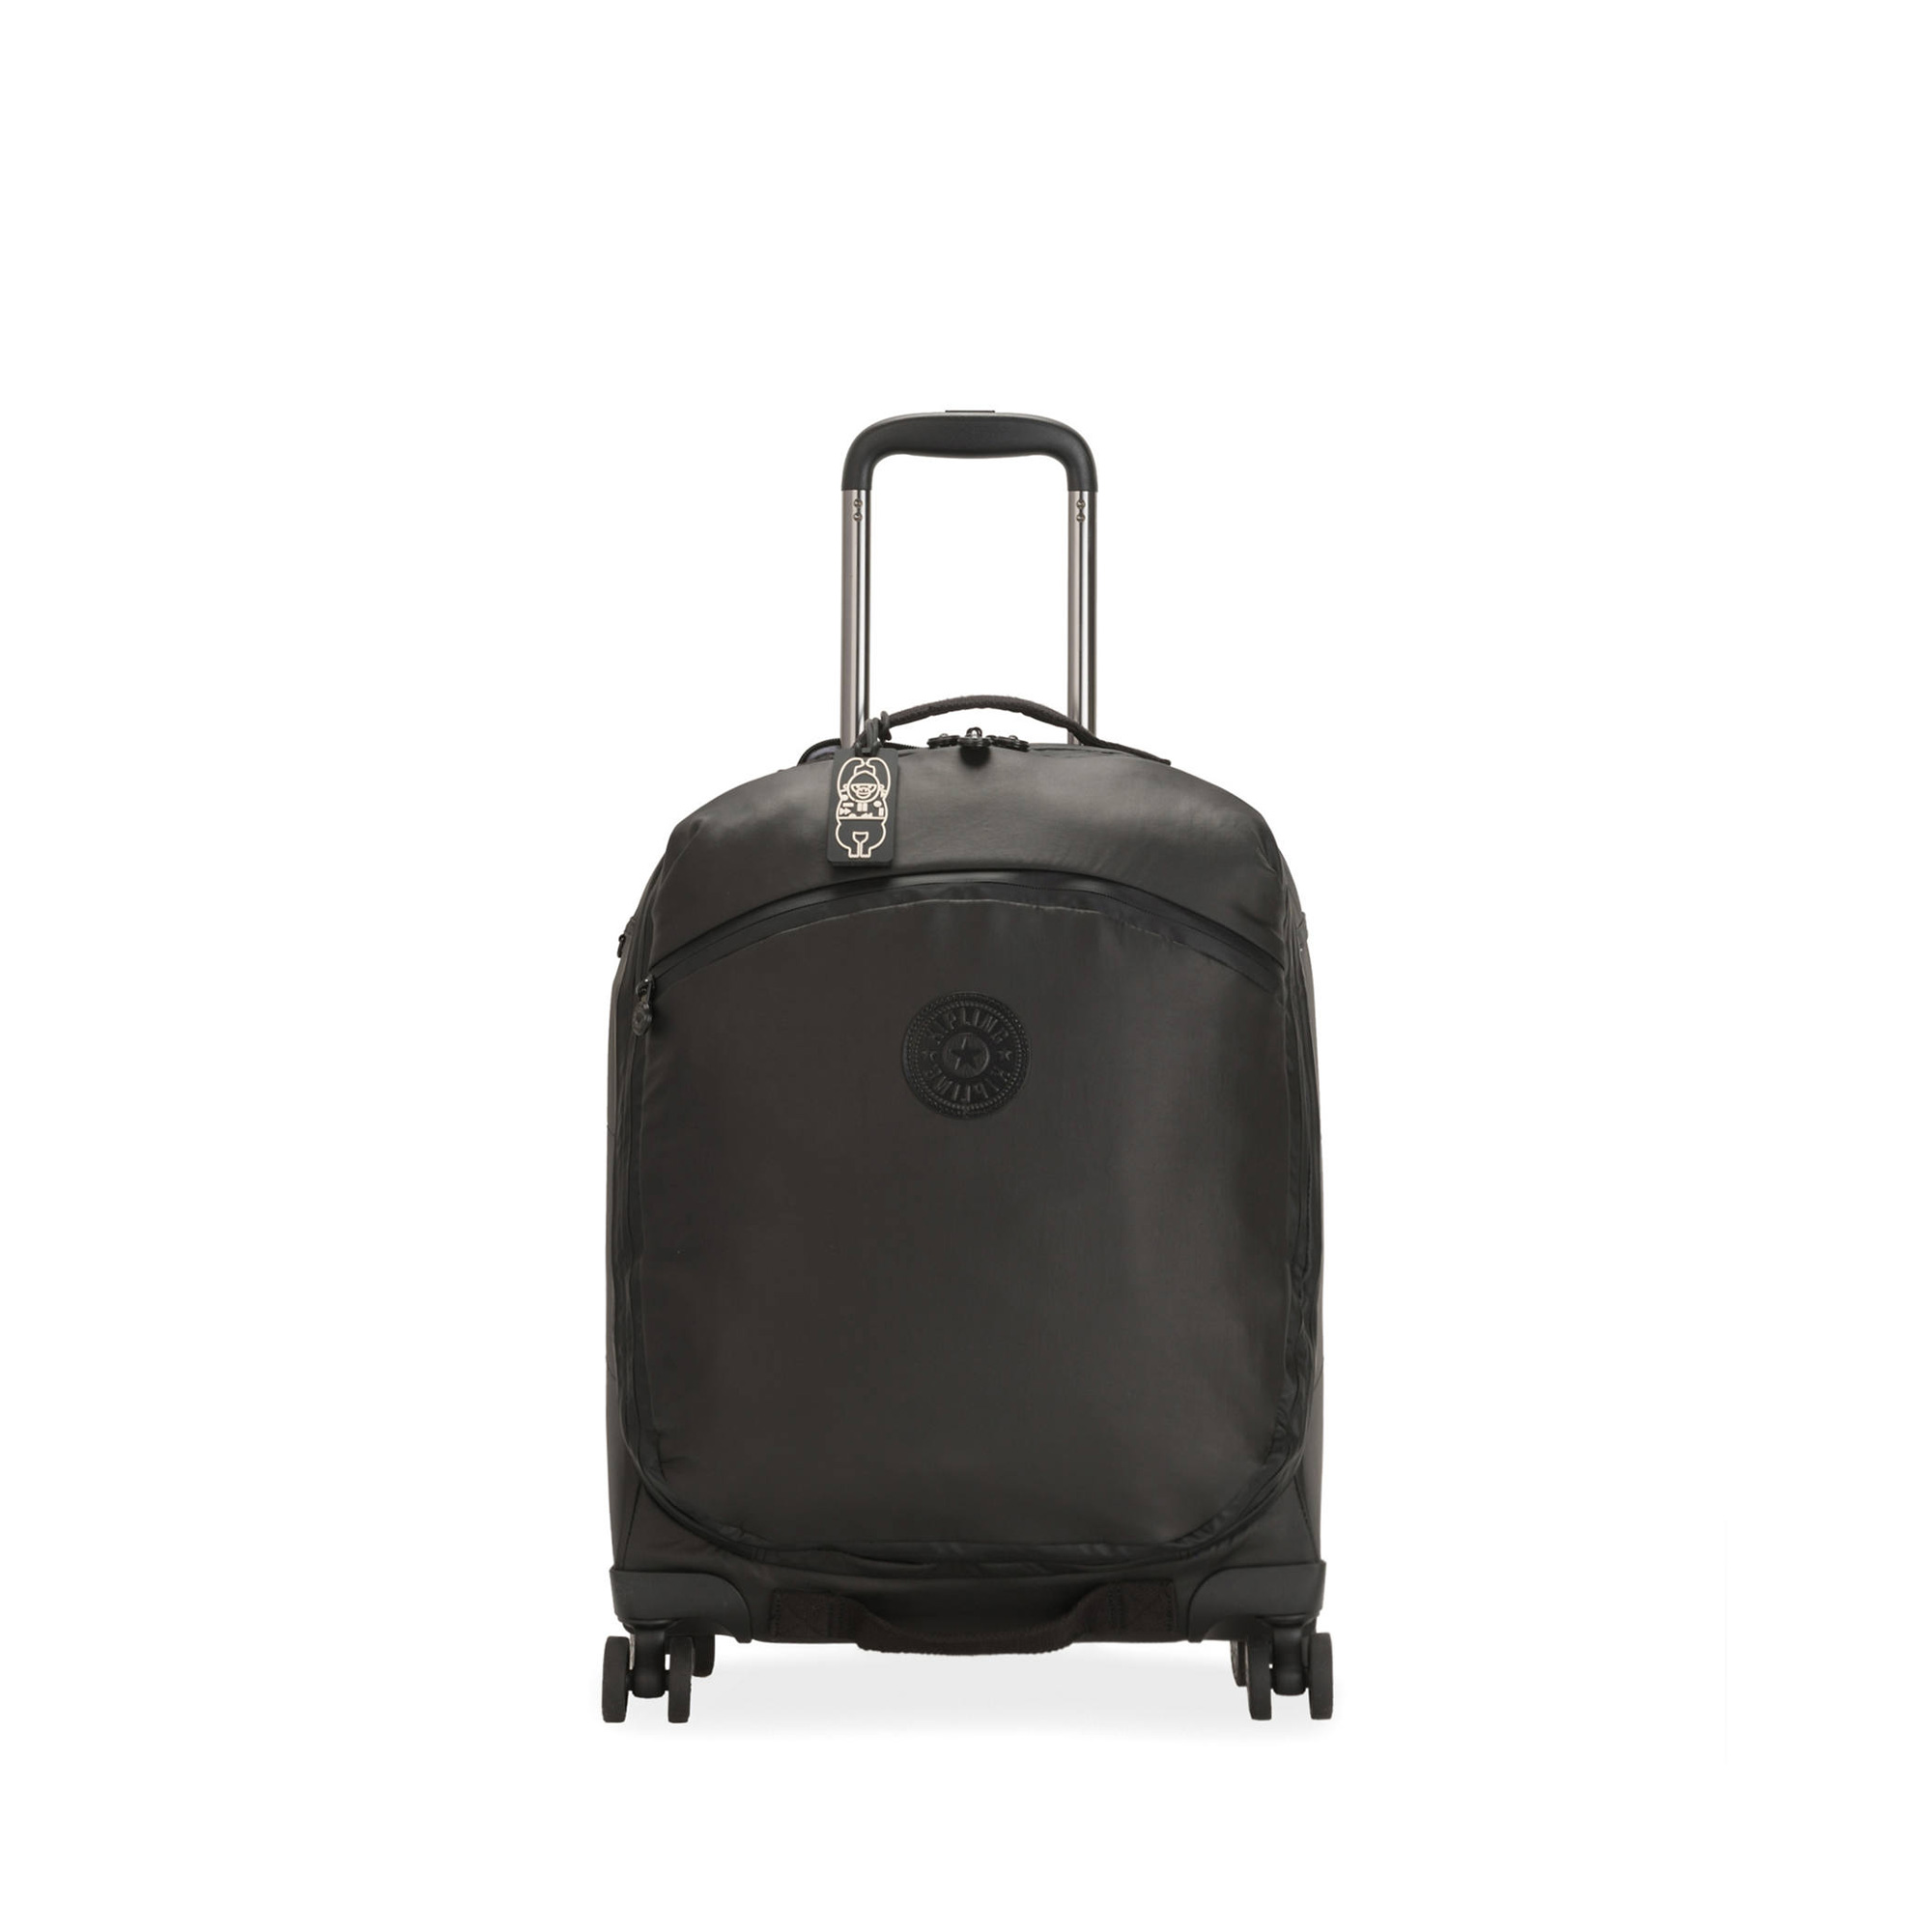 키플링 Indulge Nc Luggage KI6009-22Q Raw Black 084